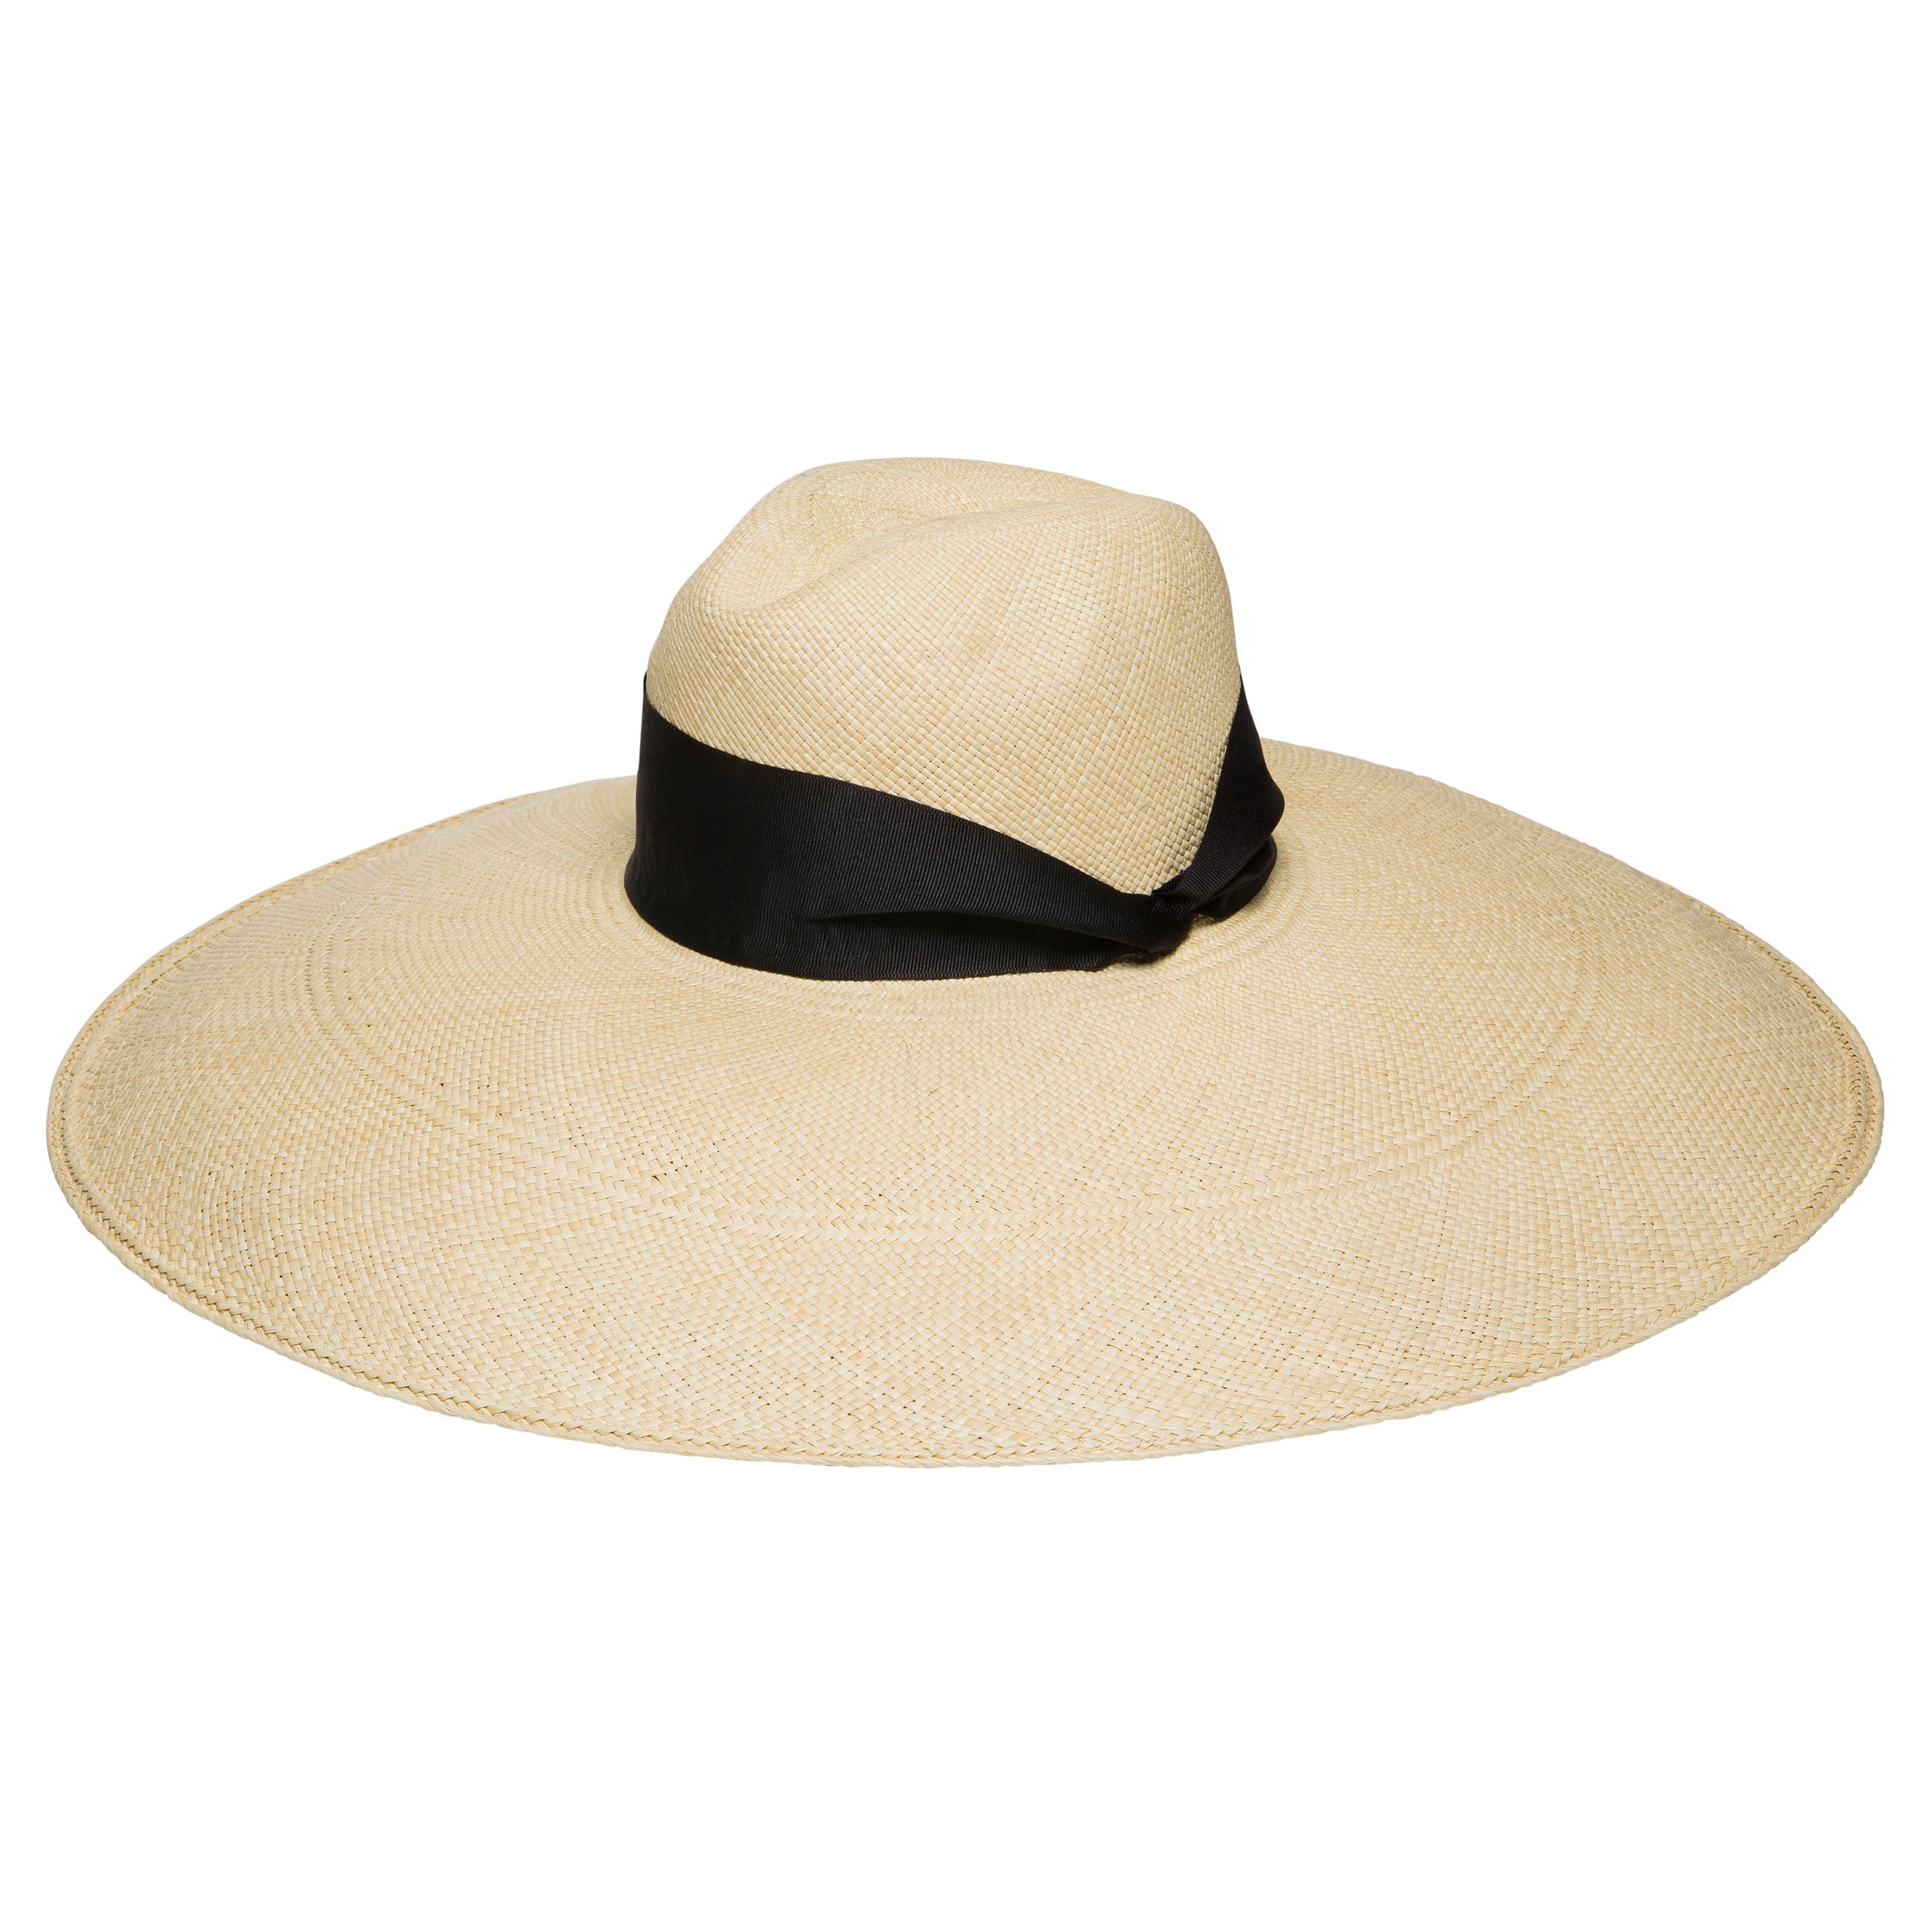 My Favourite Panama Hat